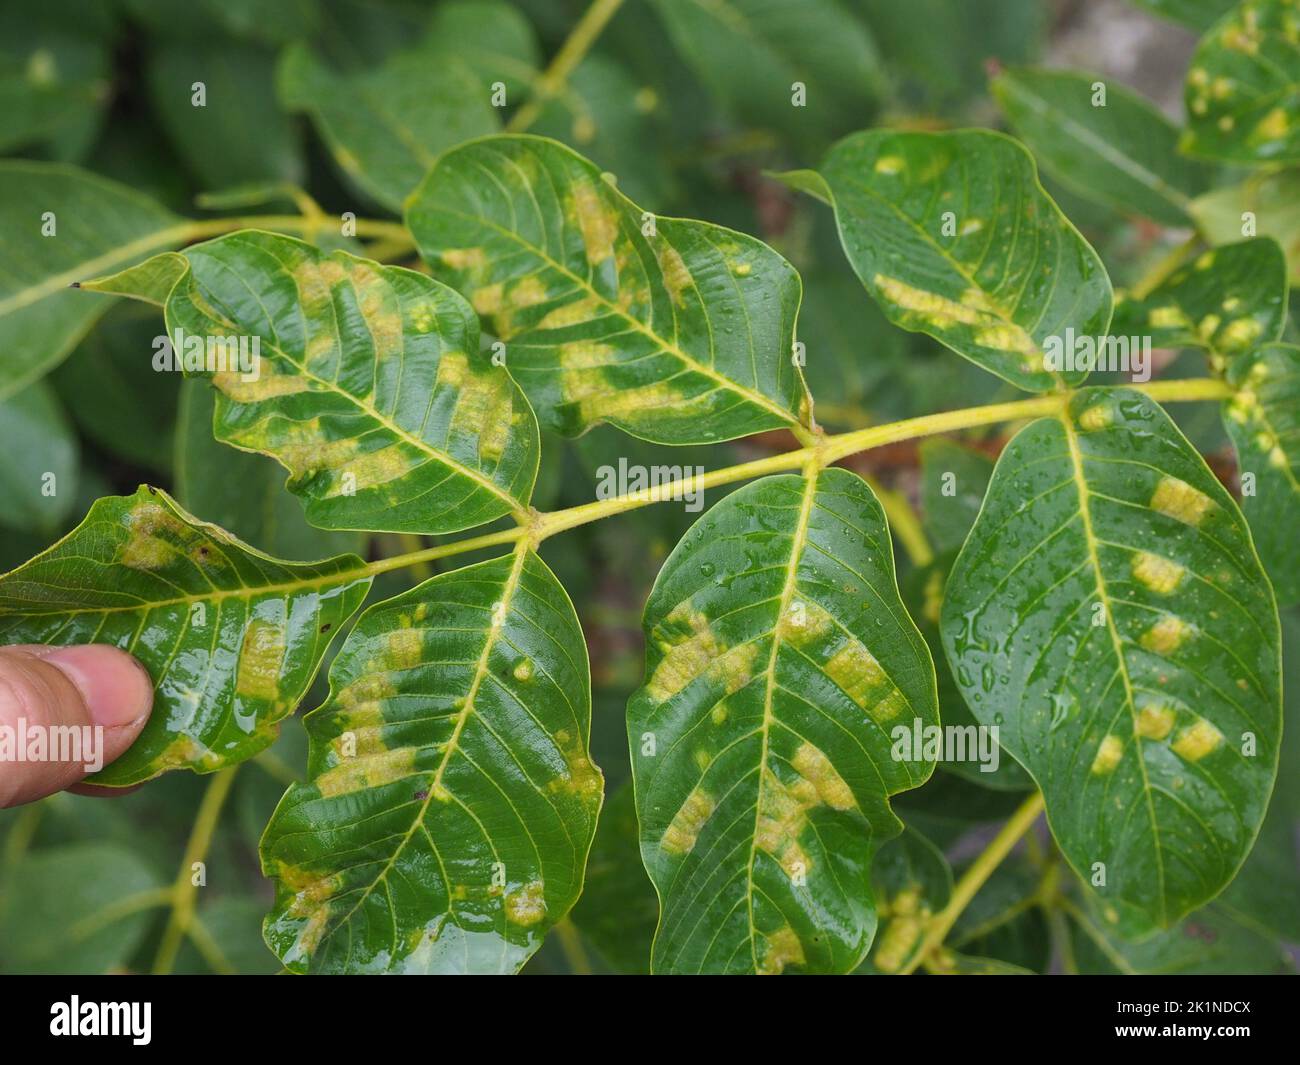 Erkrankte Blätter eines Walnussbaums, Walnussblistermilben, die sich auf den Saft der Blätter füttern. Diese winzigen, weißlichen, wurstförmigen Milben verursachen erhöhte gree Stockfoto